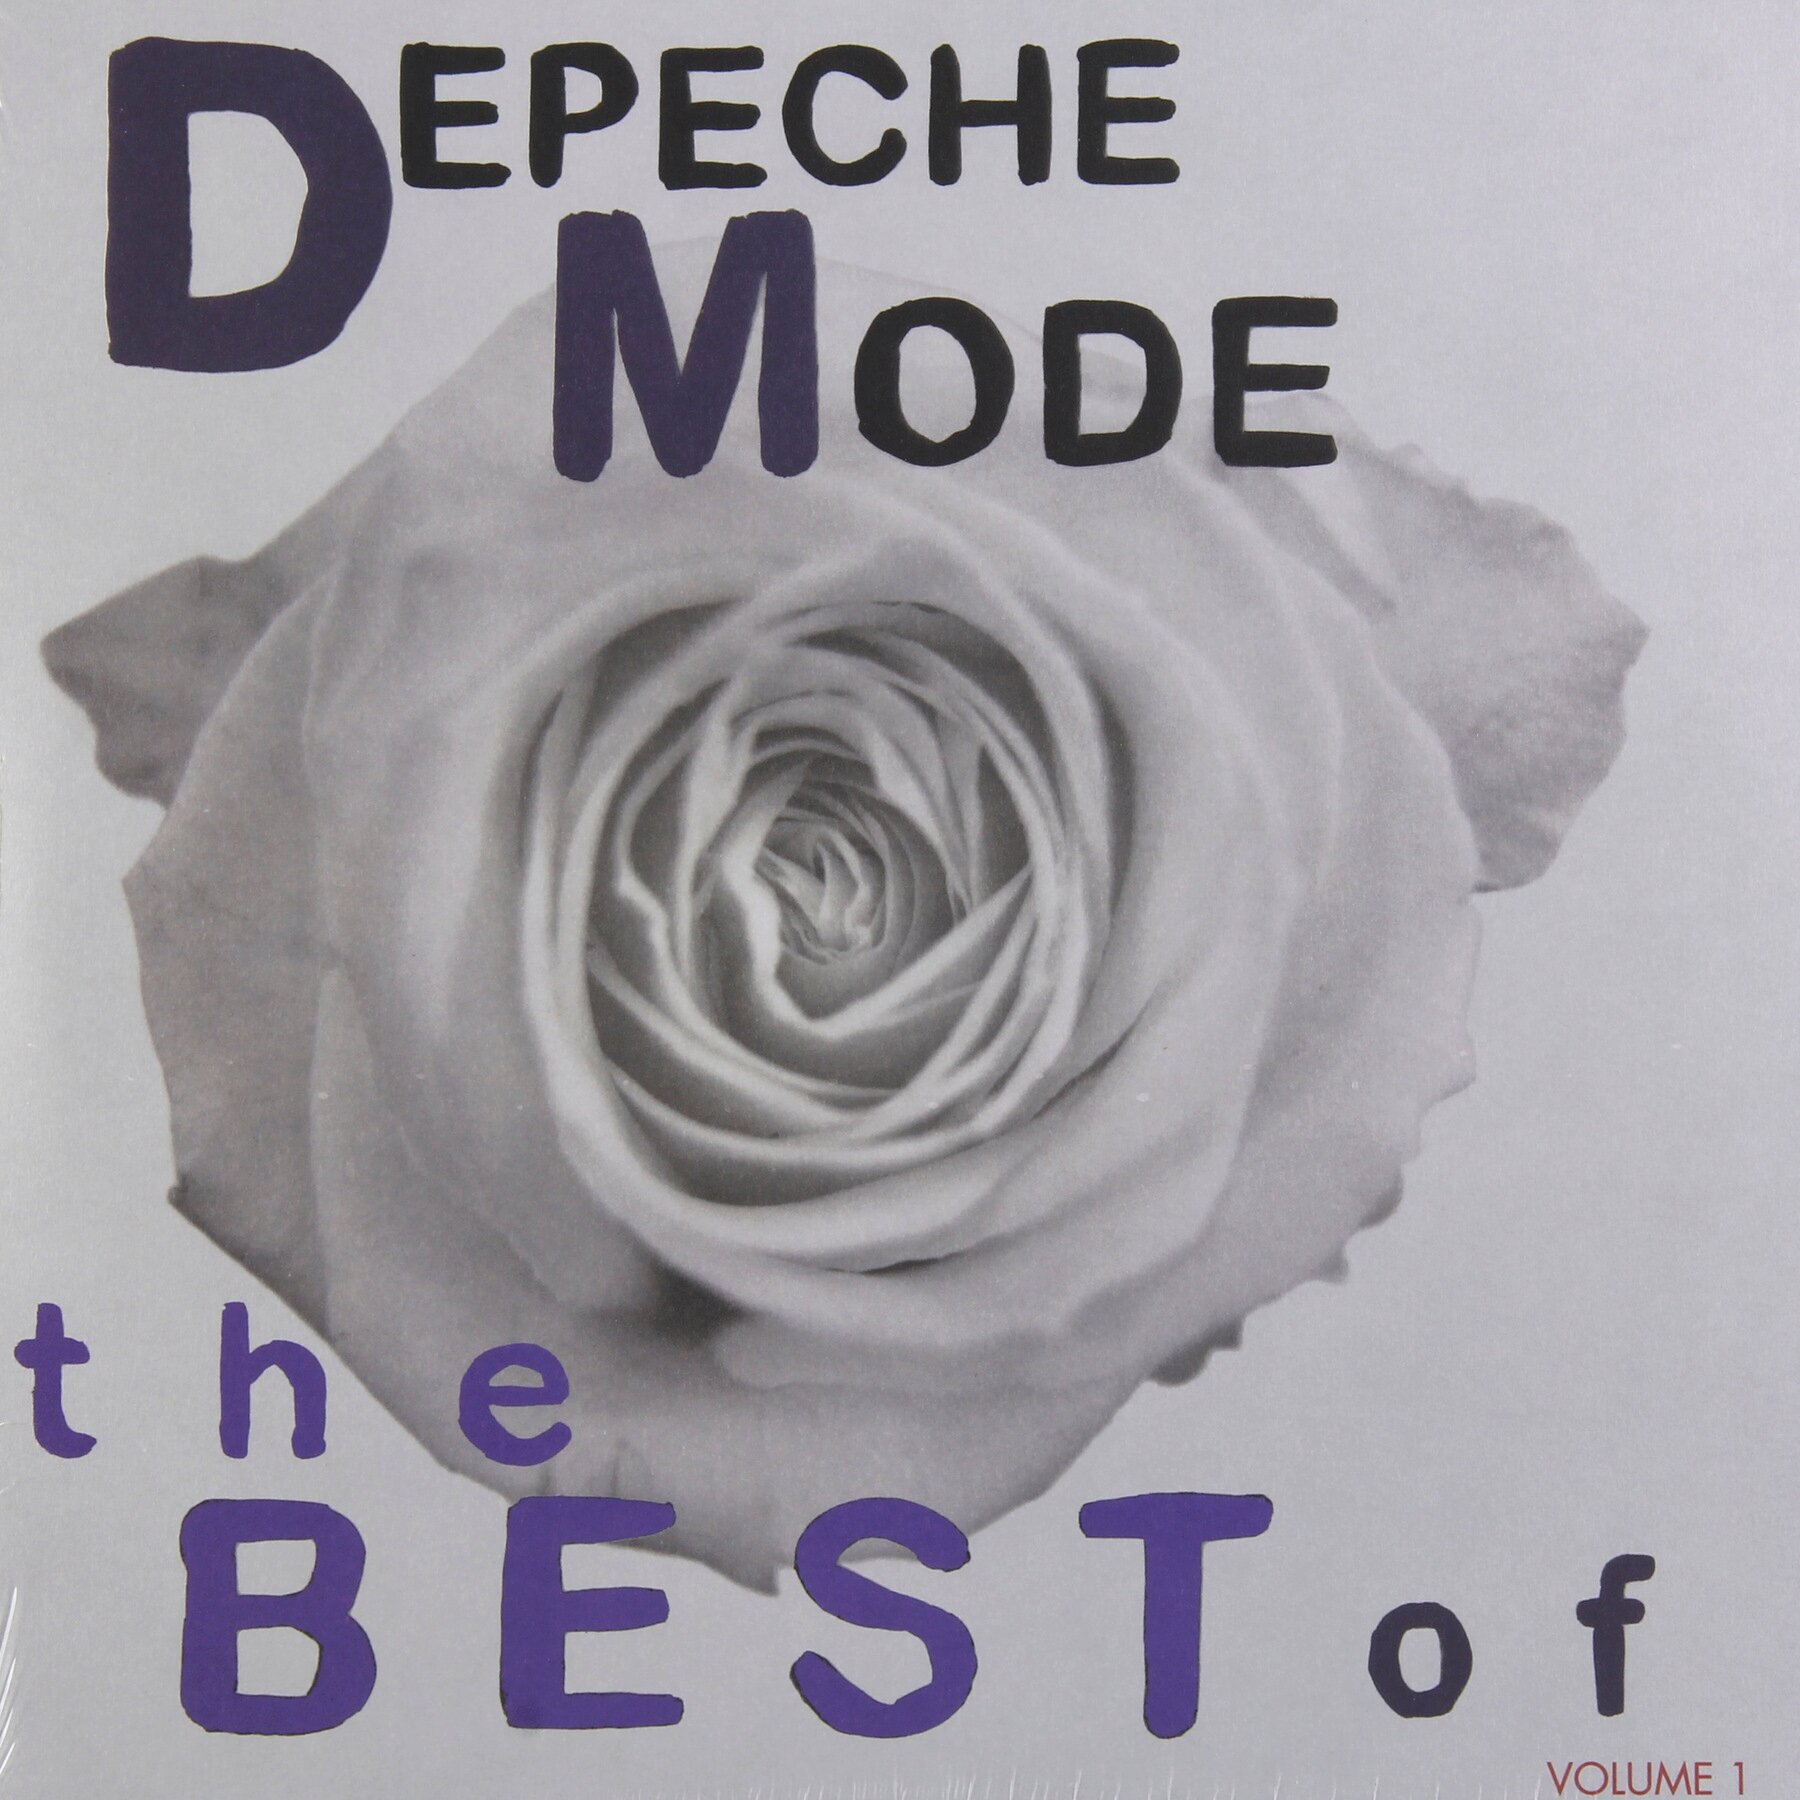 Виниловая пластинка Sony Music Depeche Mode - The Best Of Depeche Mode, Volume 1 (3LP)